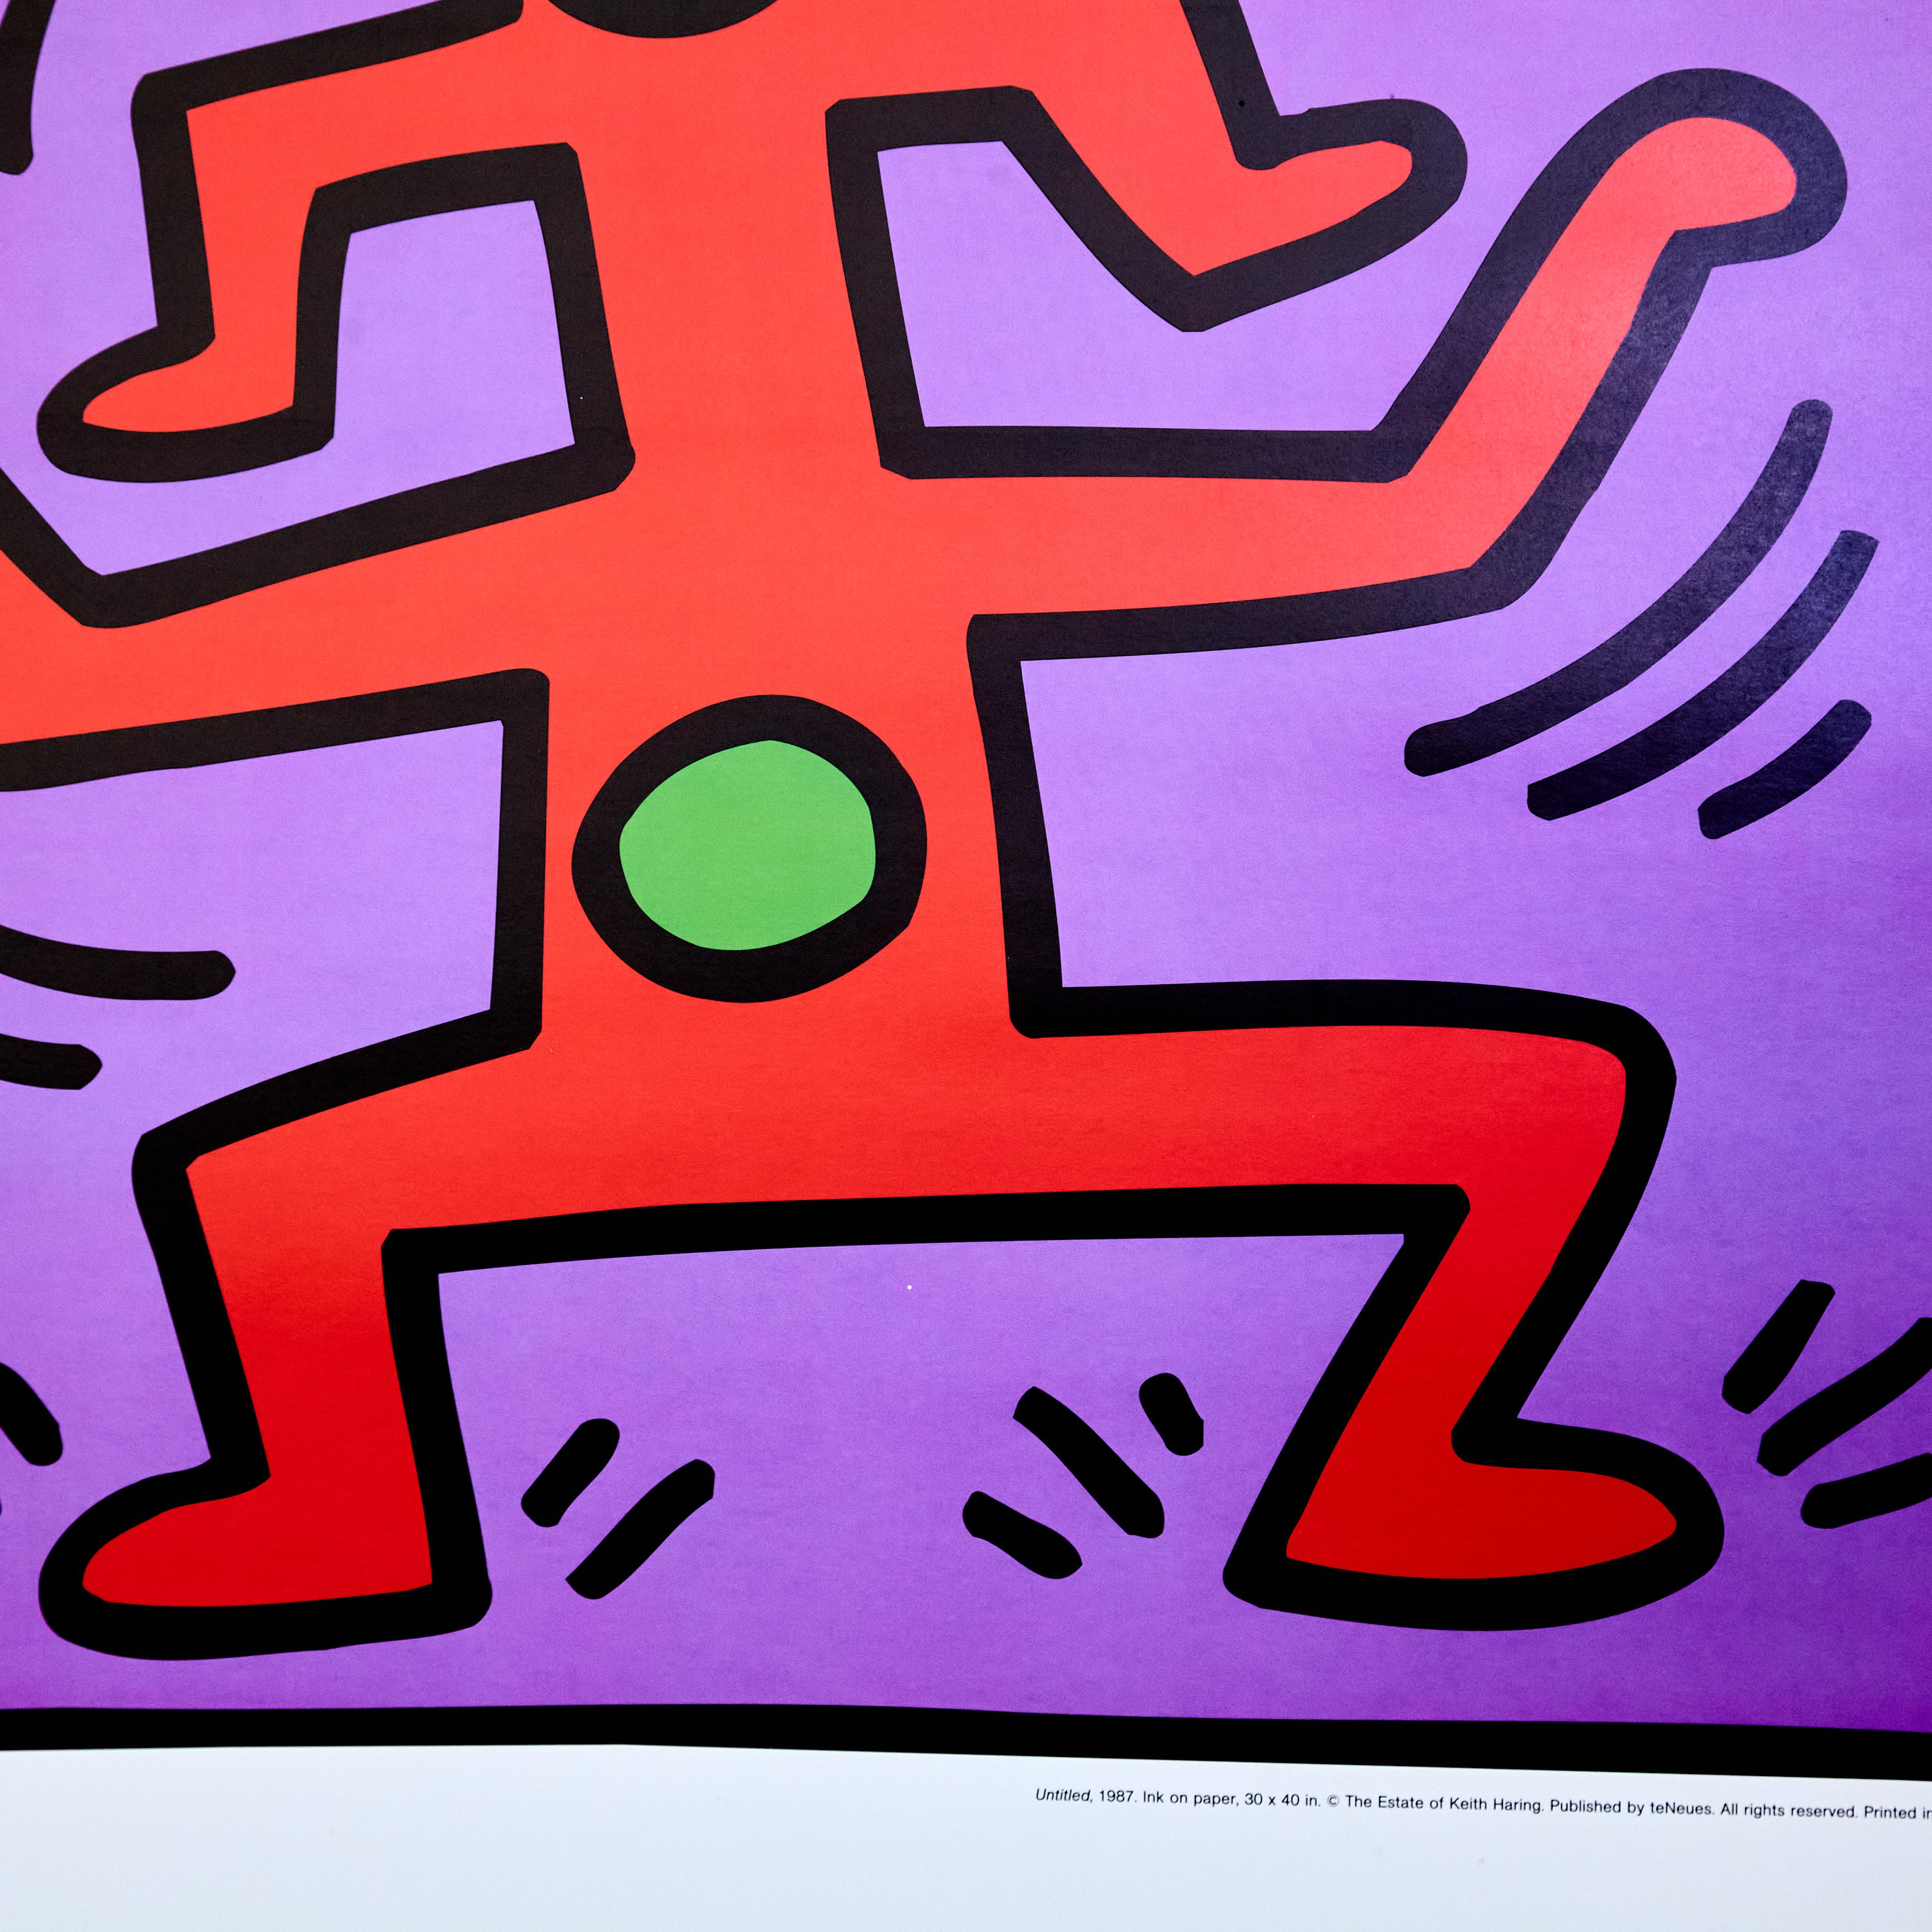 Lithographie von Keith Haring, 1987 von teNeues hergestellt.

Hergestellt in Deutschland, ca. 1980.

In ursprünglichem Zustand mit geringen Gebrauchsspuren, die dem Alter und dem Gebrauch entsprechen, wobei eine schöne Patina erhalten